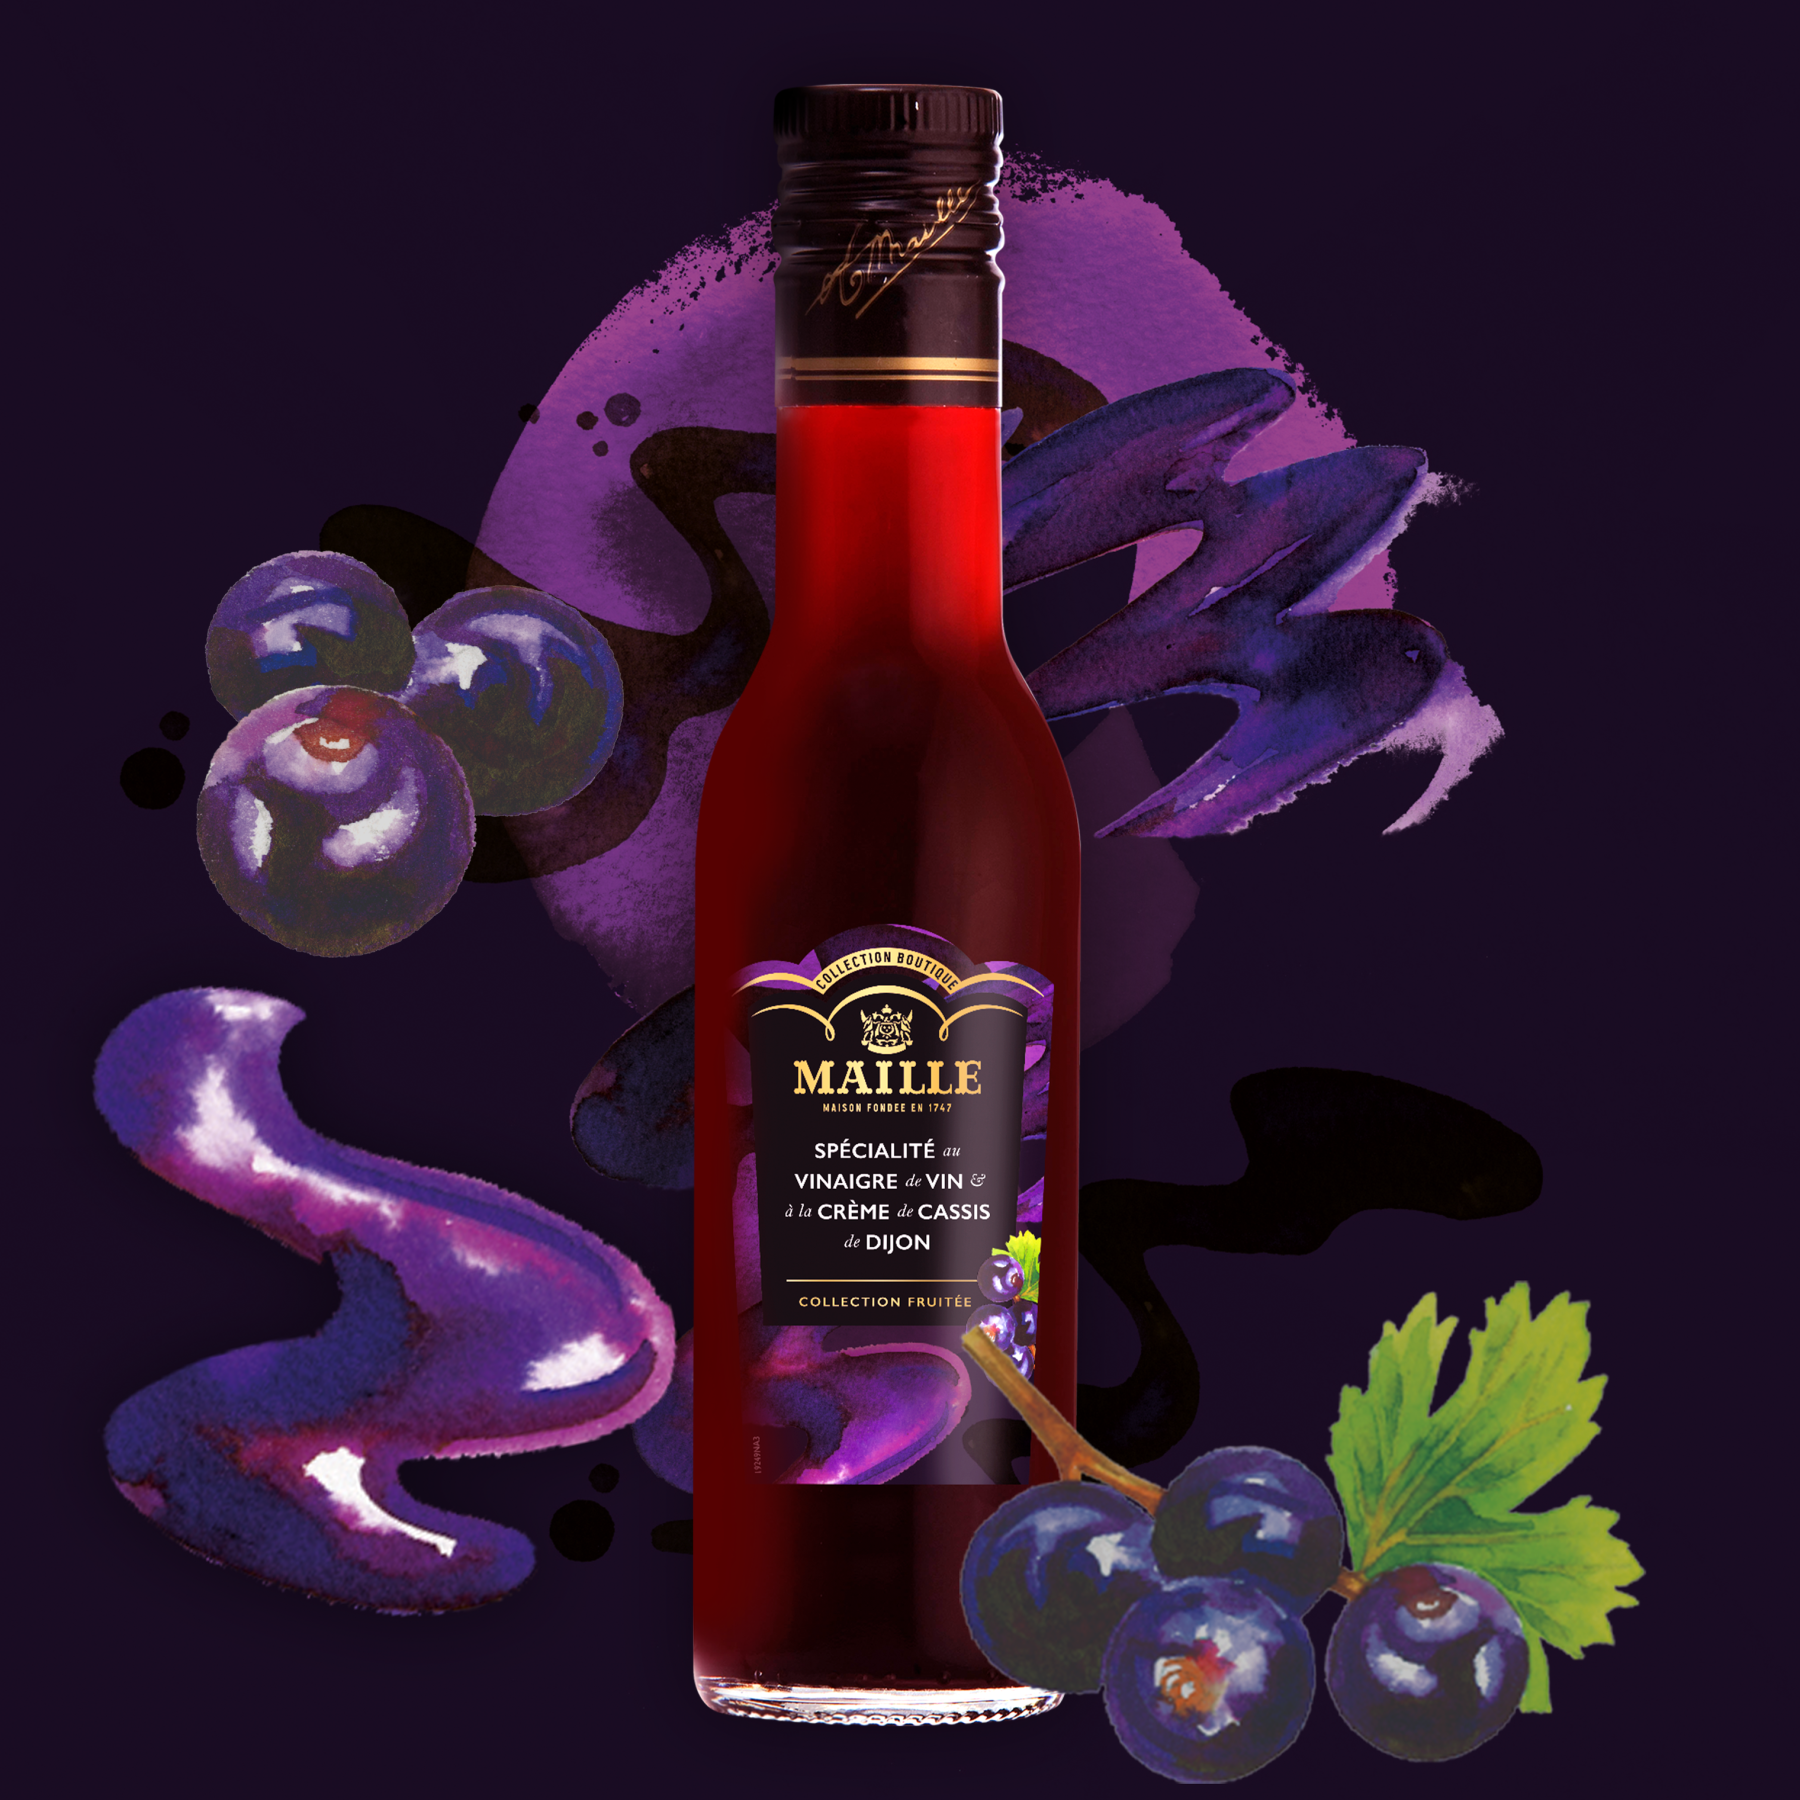 Maille - Specialite au vinaigre de vin et a la creme de cassis de dijon, 250 ml, new visual